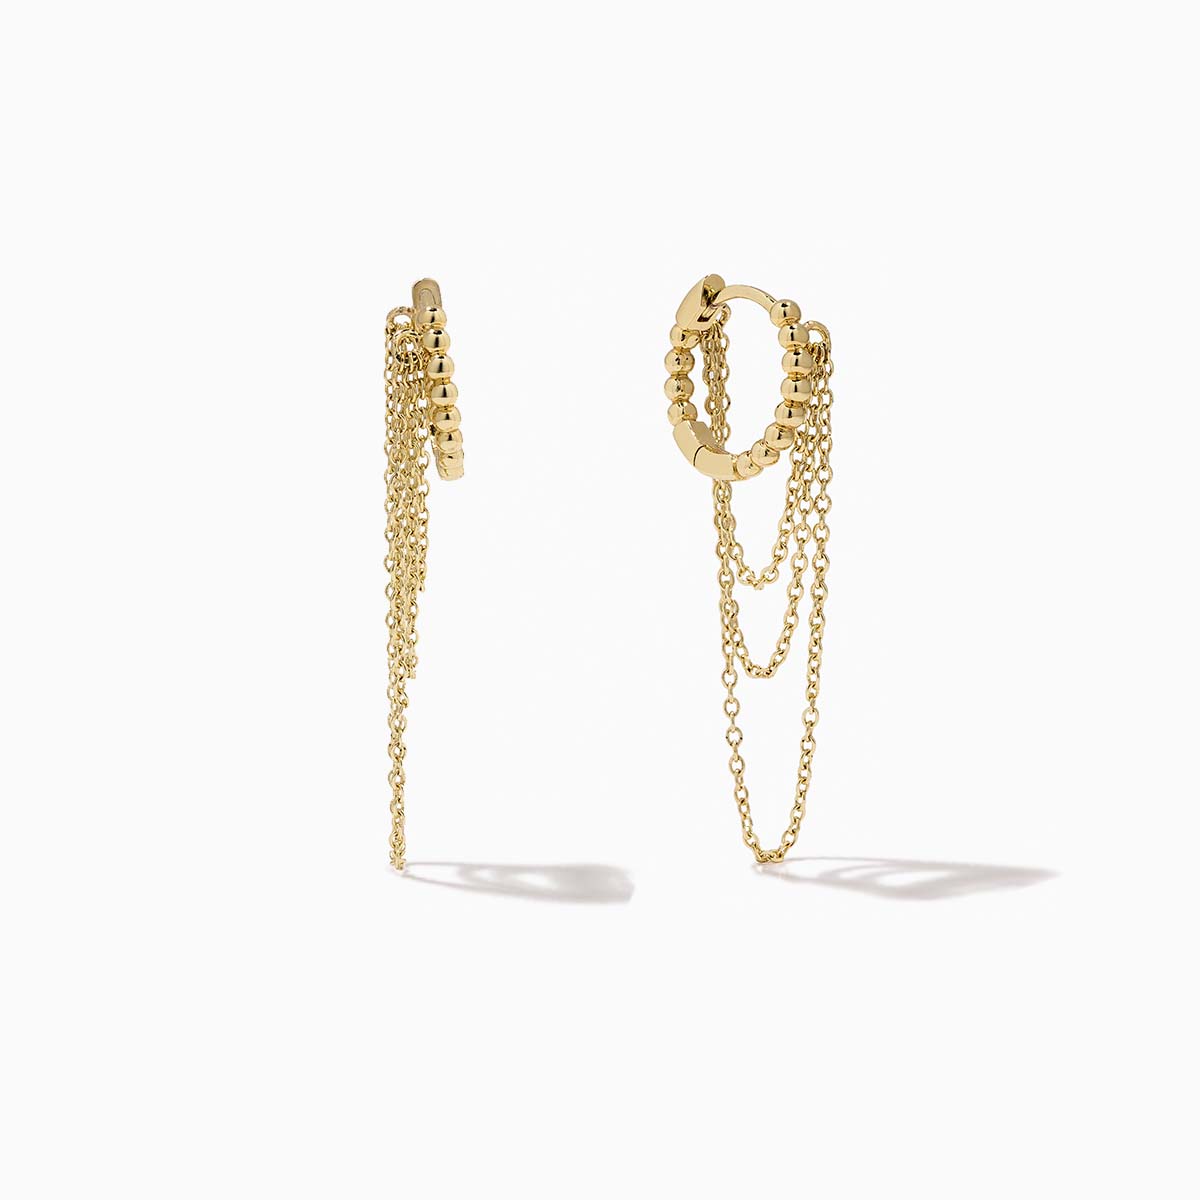 Chain Earrings - Gold Chain Earrings, Simple Gold Earrings, Simple Earrings, Dainty Gold Earrings, Surgical Steel Earrings |GPE00011